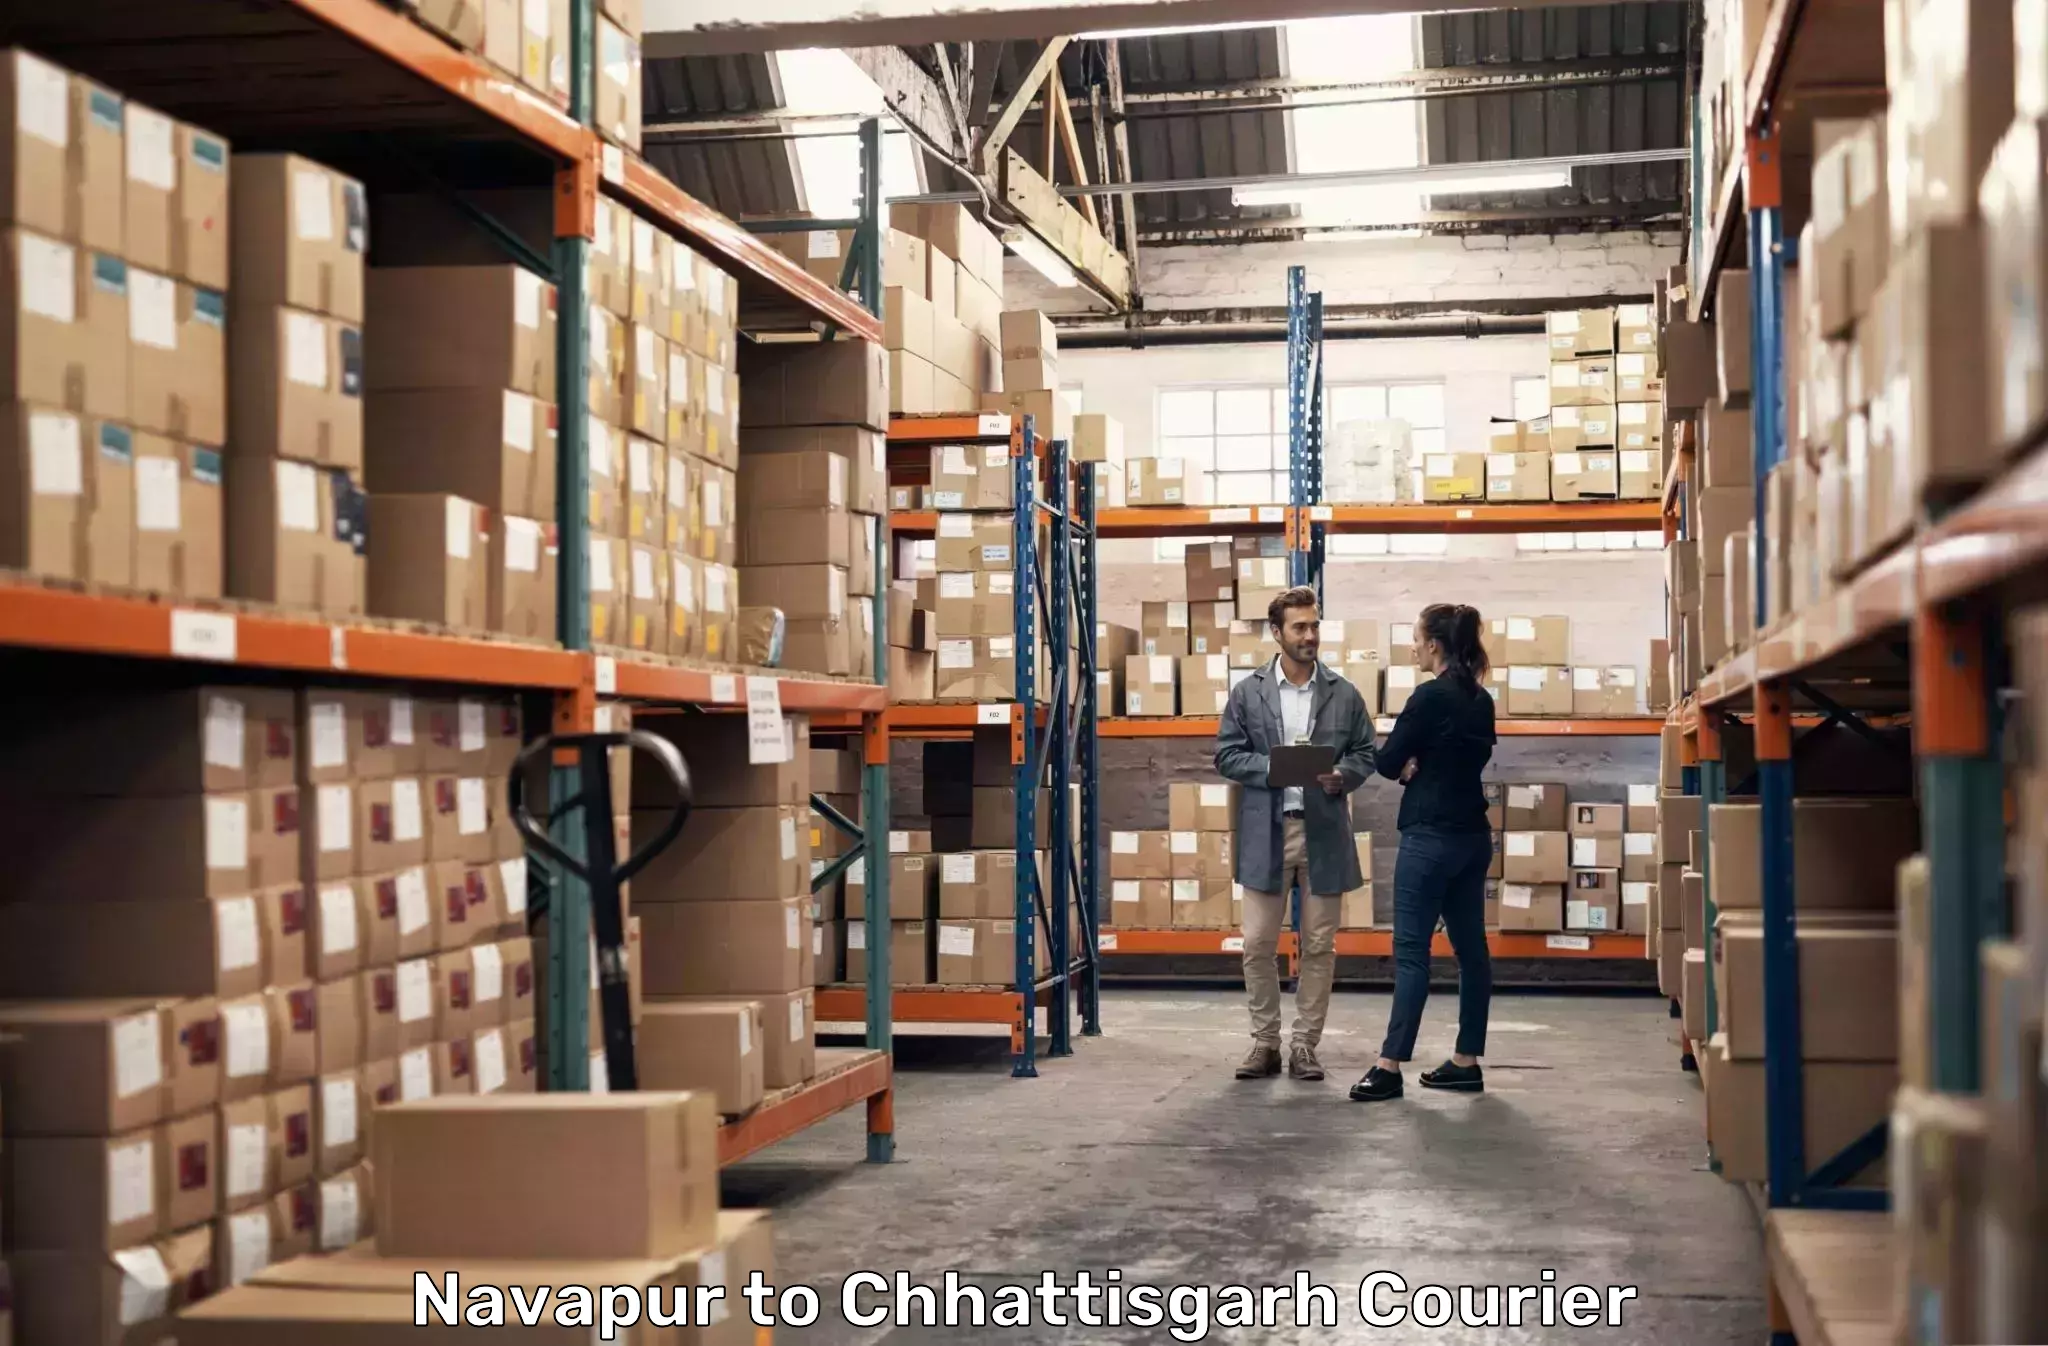 Courier service comparison Navapur to Chhattisgarh